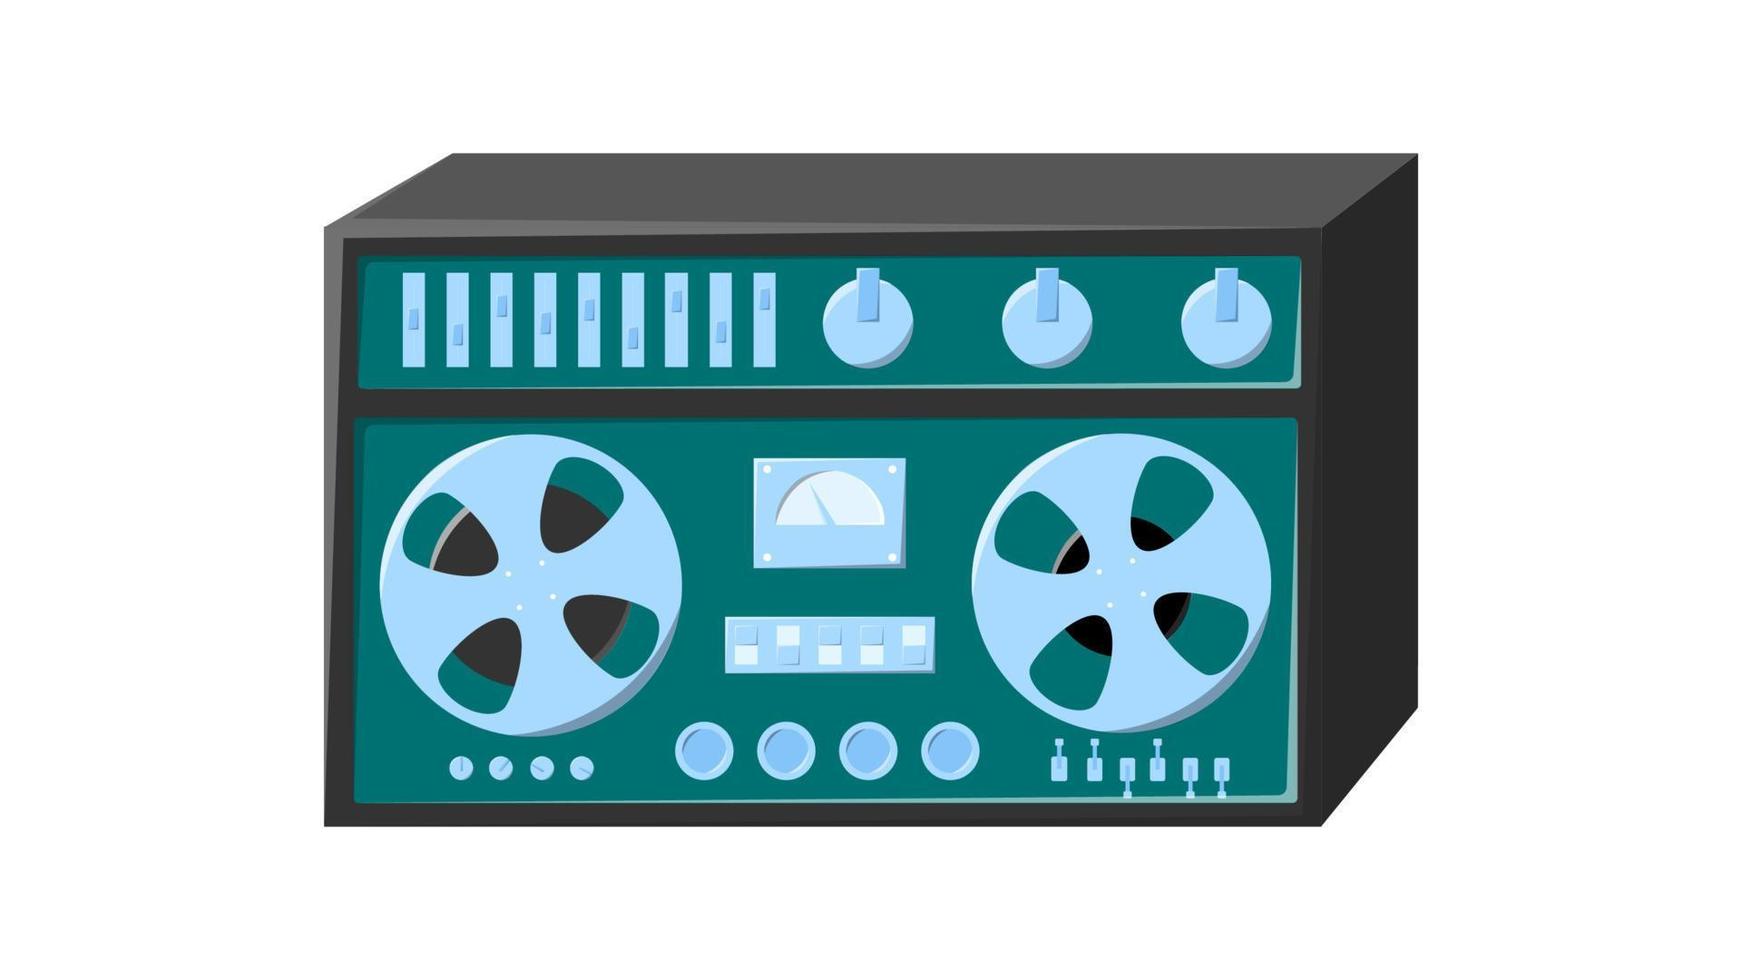 vieja isometría retro verde vintage grabadora de cinta de casete de música con cinta magnética en carretes y altavoces de los años 70, 80, 90. hermoso icono. ilustración vectorial vector